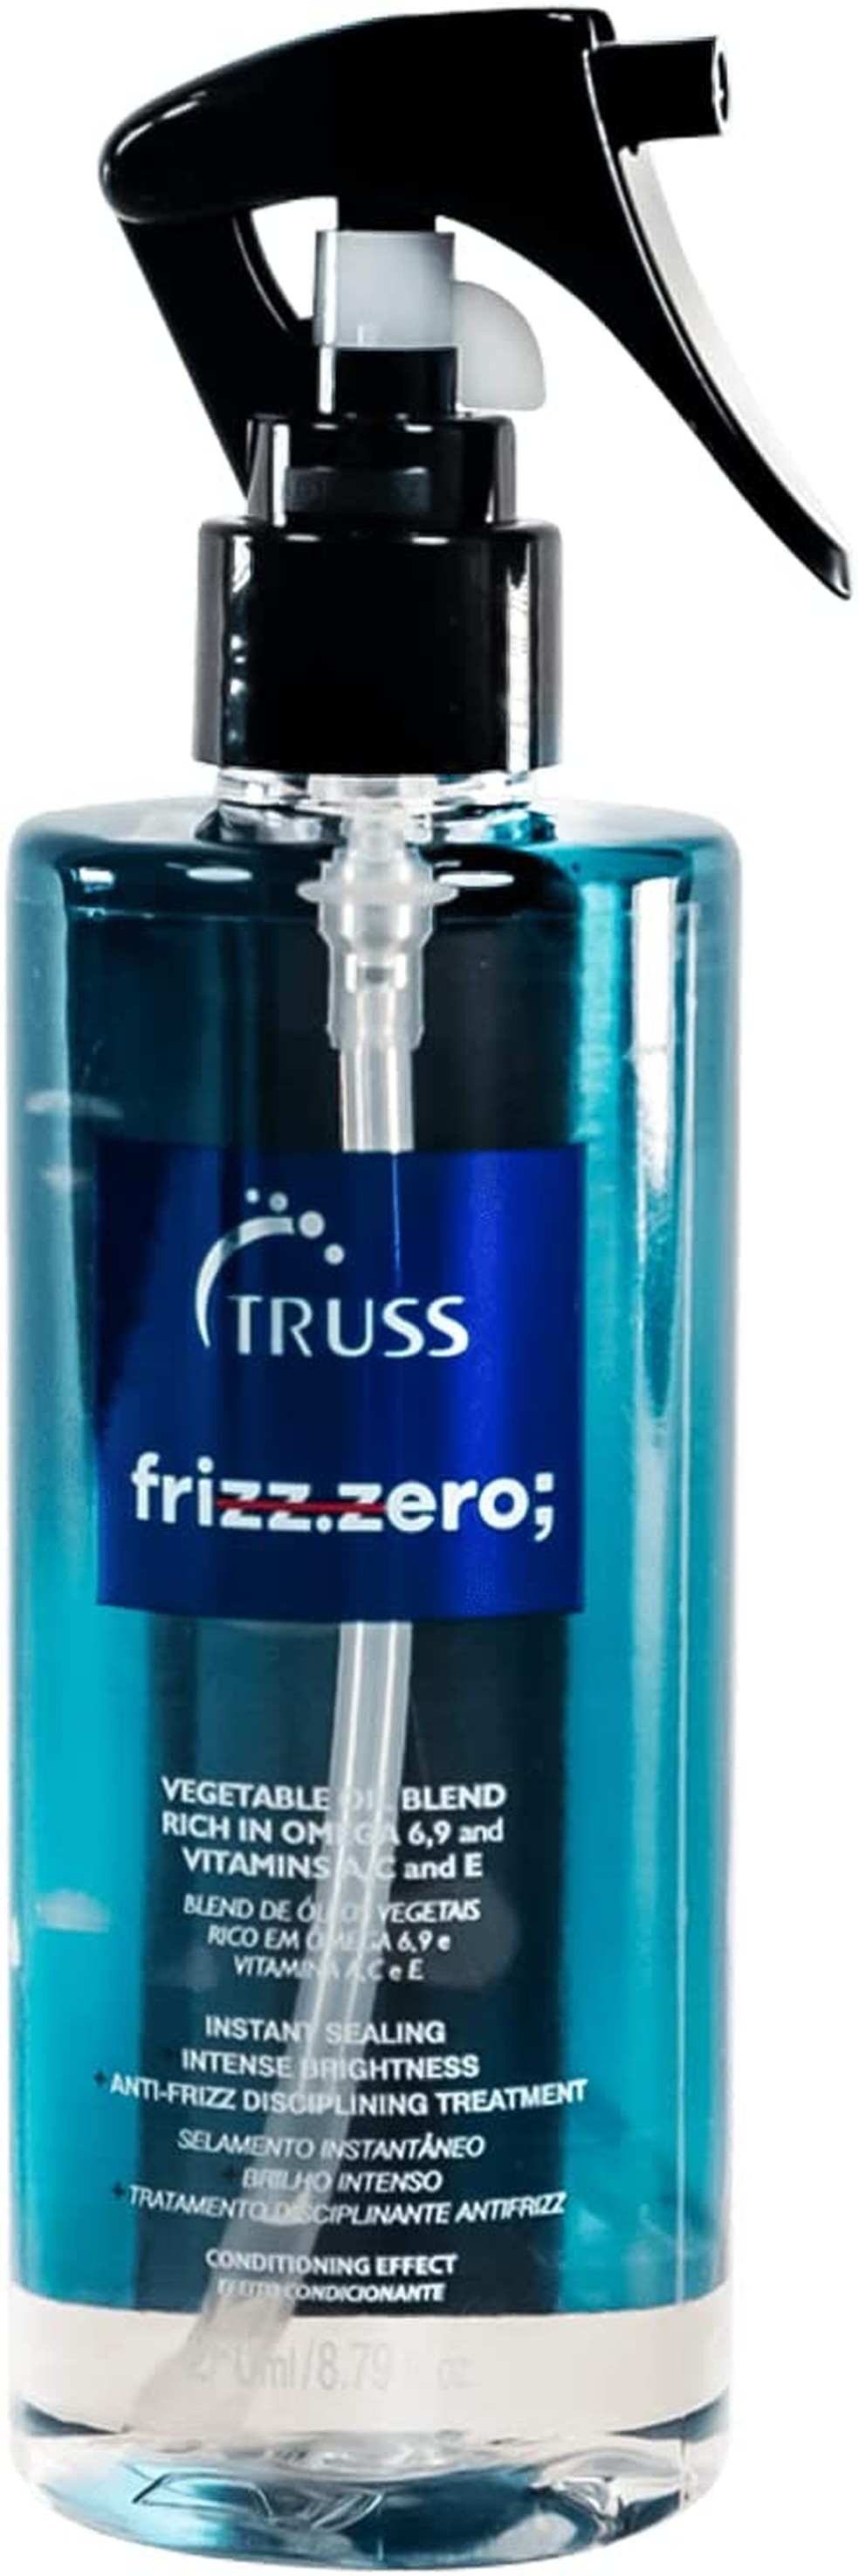 Finalizador Frizz Zero, Truss  — Foto: Divulgação